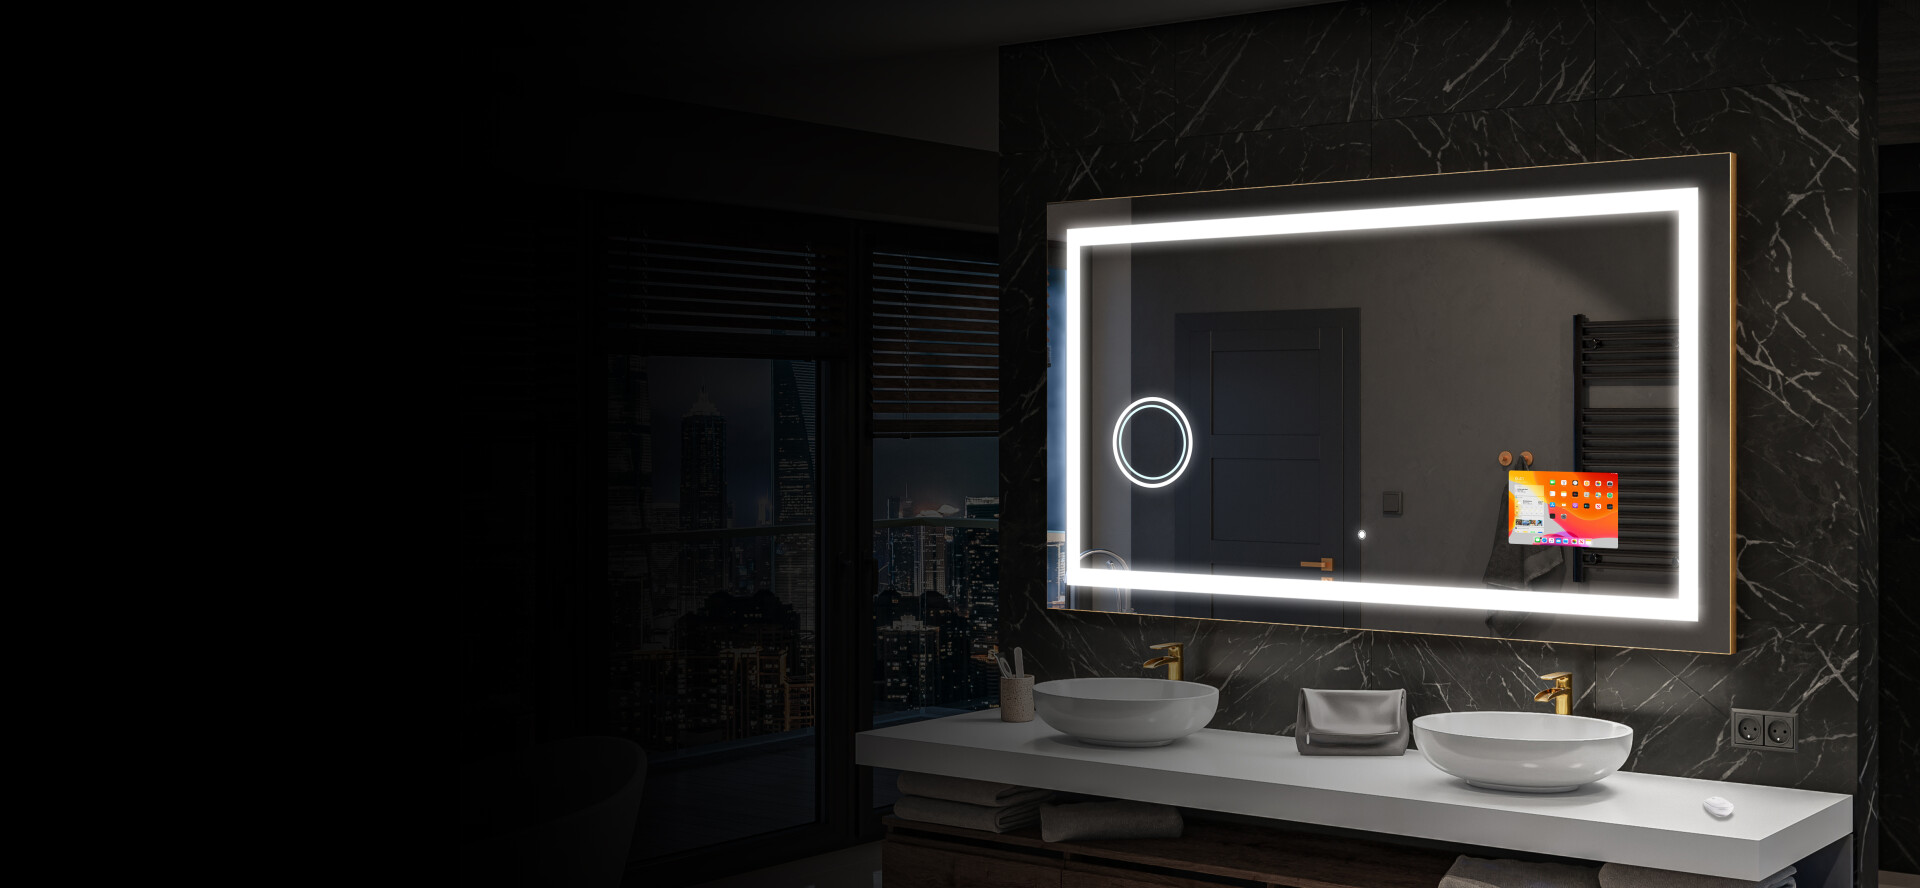 Artforma - Espejo redondo baño con luz LED L76